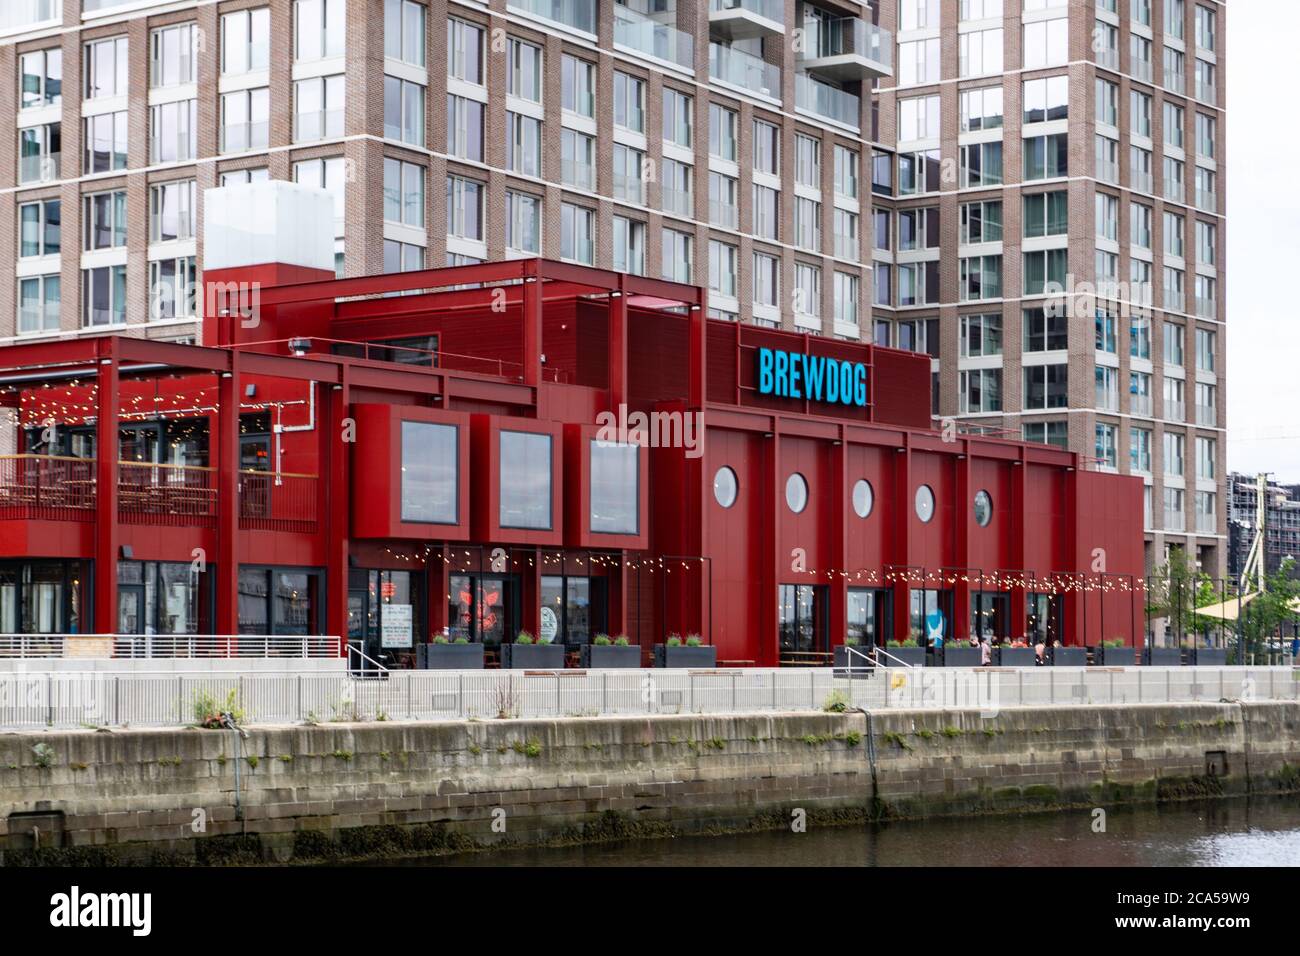 El nuevo puesto de Brewdog en Dublín, Irlanda, en Capital Dock donde el Gran Canal se encuentra con los ríos Doder y Liffey. Brewdog es una cervecería artesanal Foto de stock